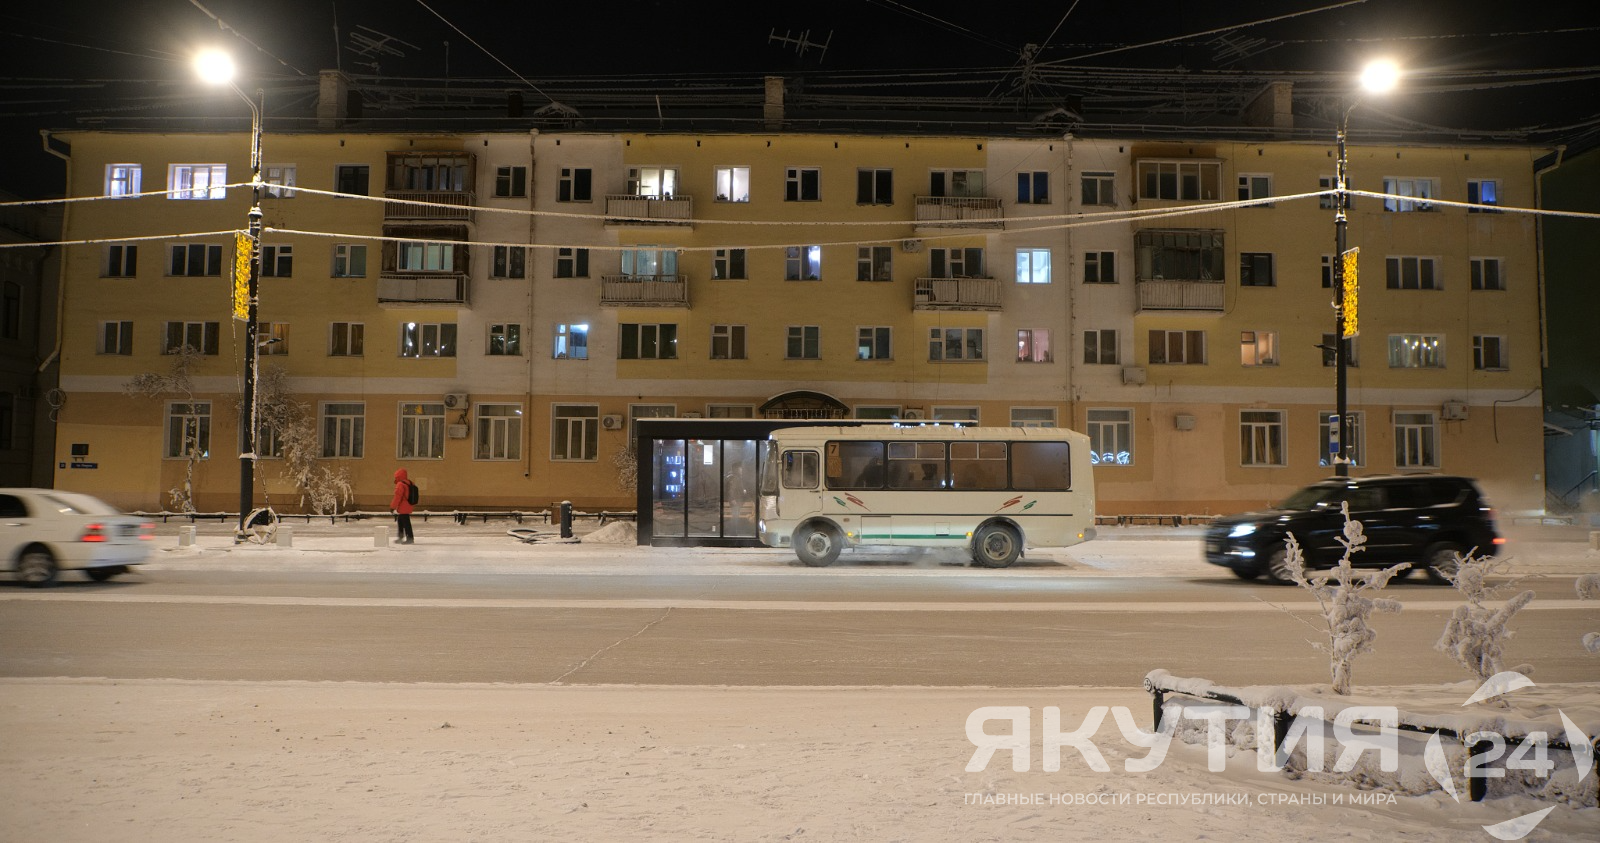 Мэрия Якутска разрабатывает изменения маршрутной сети общественного транспорта